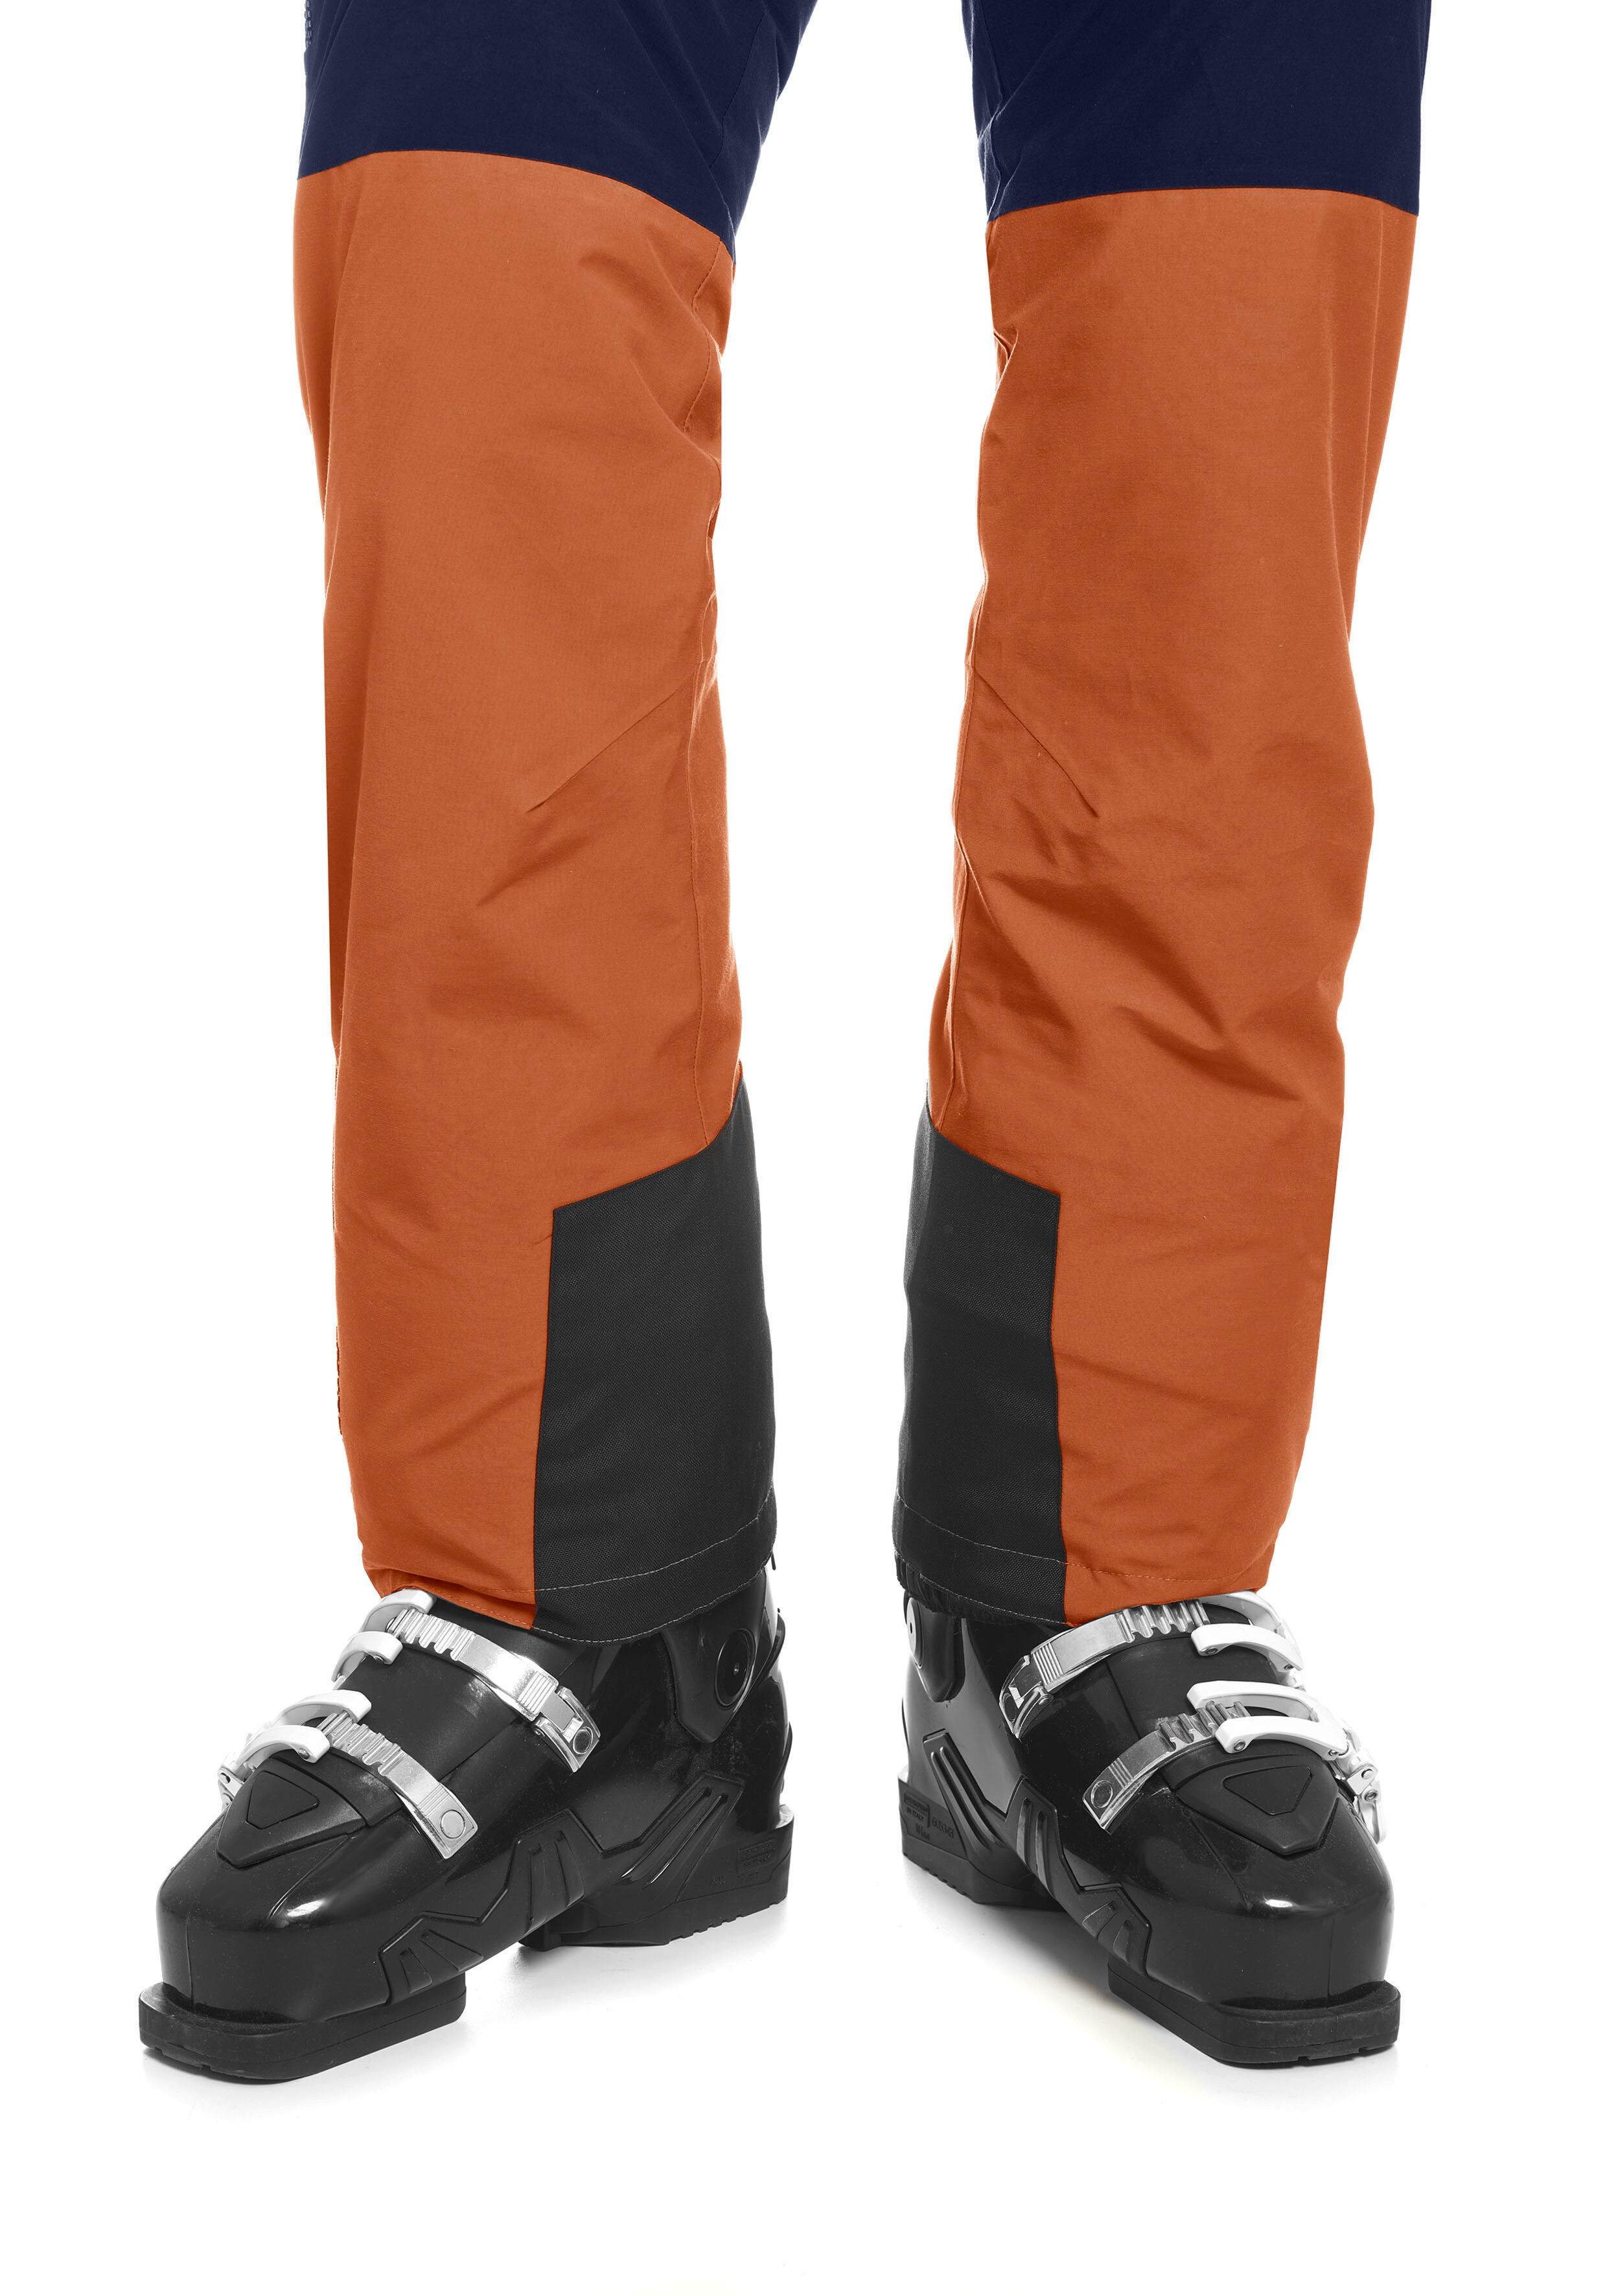 Maier Sports Skihose »Backline Pants W«, Lässig geschnittene Skihose für... grün  34 36 38 40 42 44 46 48 50 52